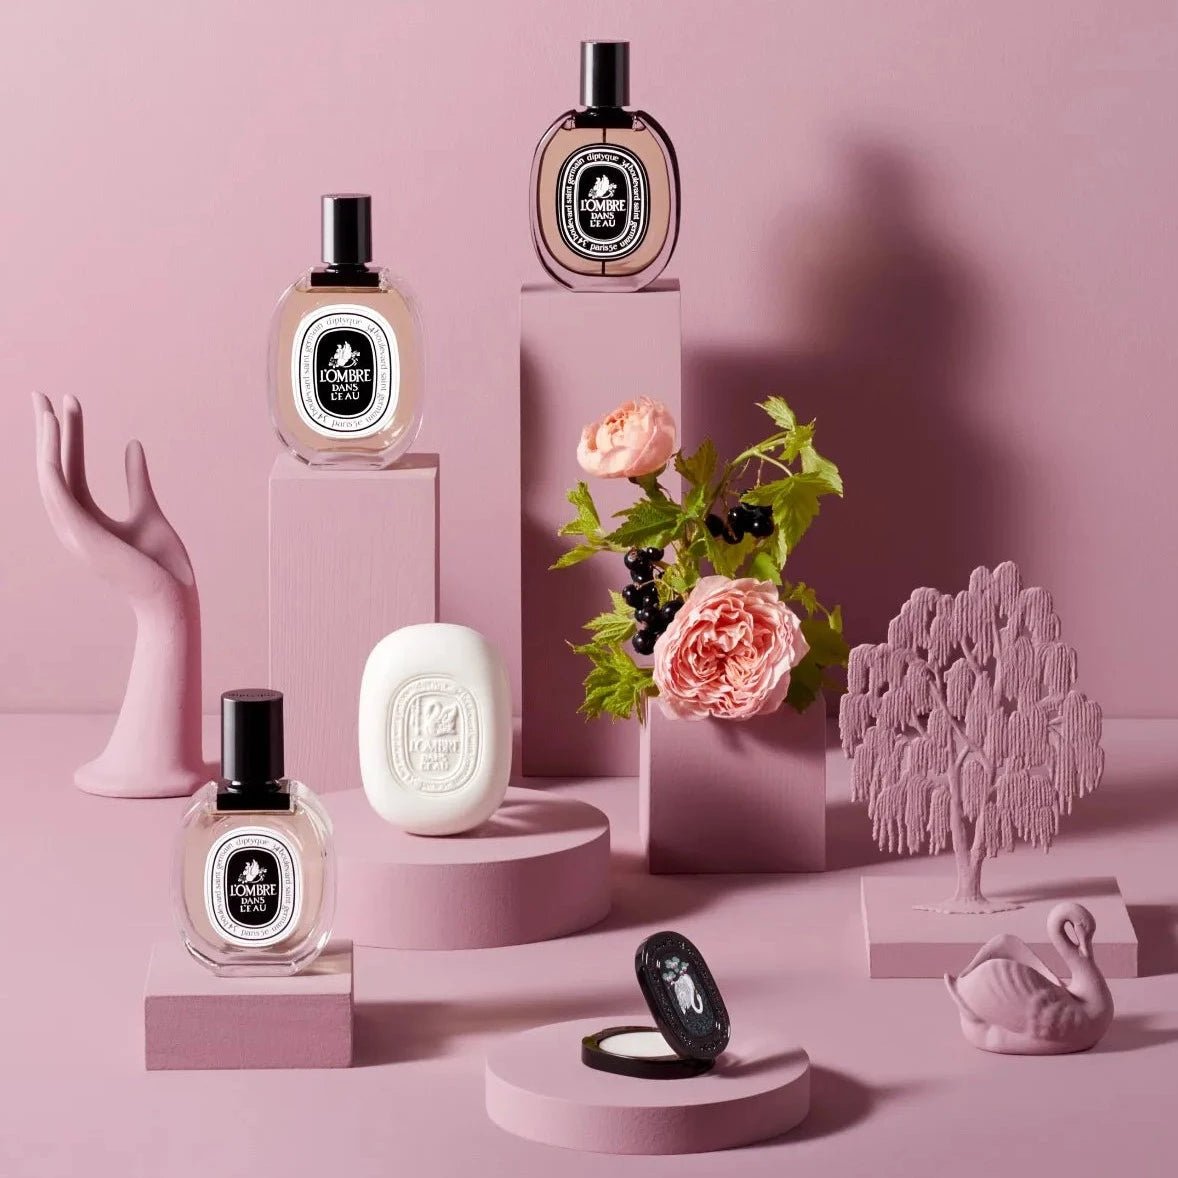 Diptyque L'Ombre Dans L'Eau EDT | My Perfume Shop Australia